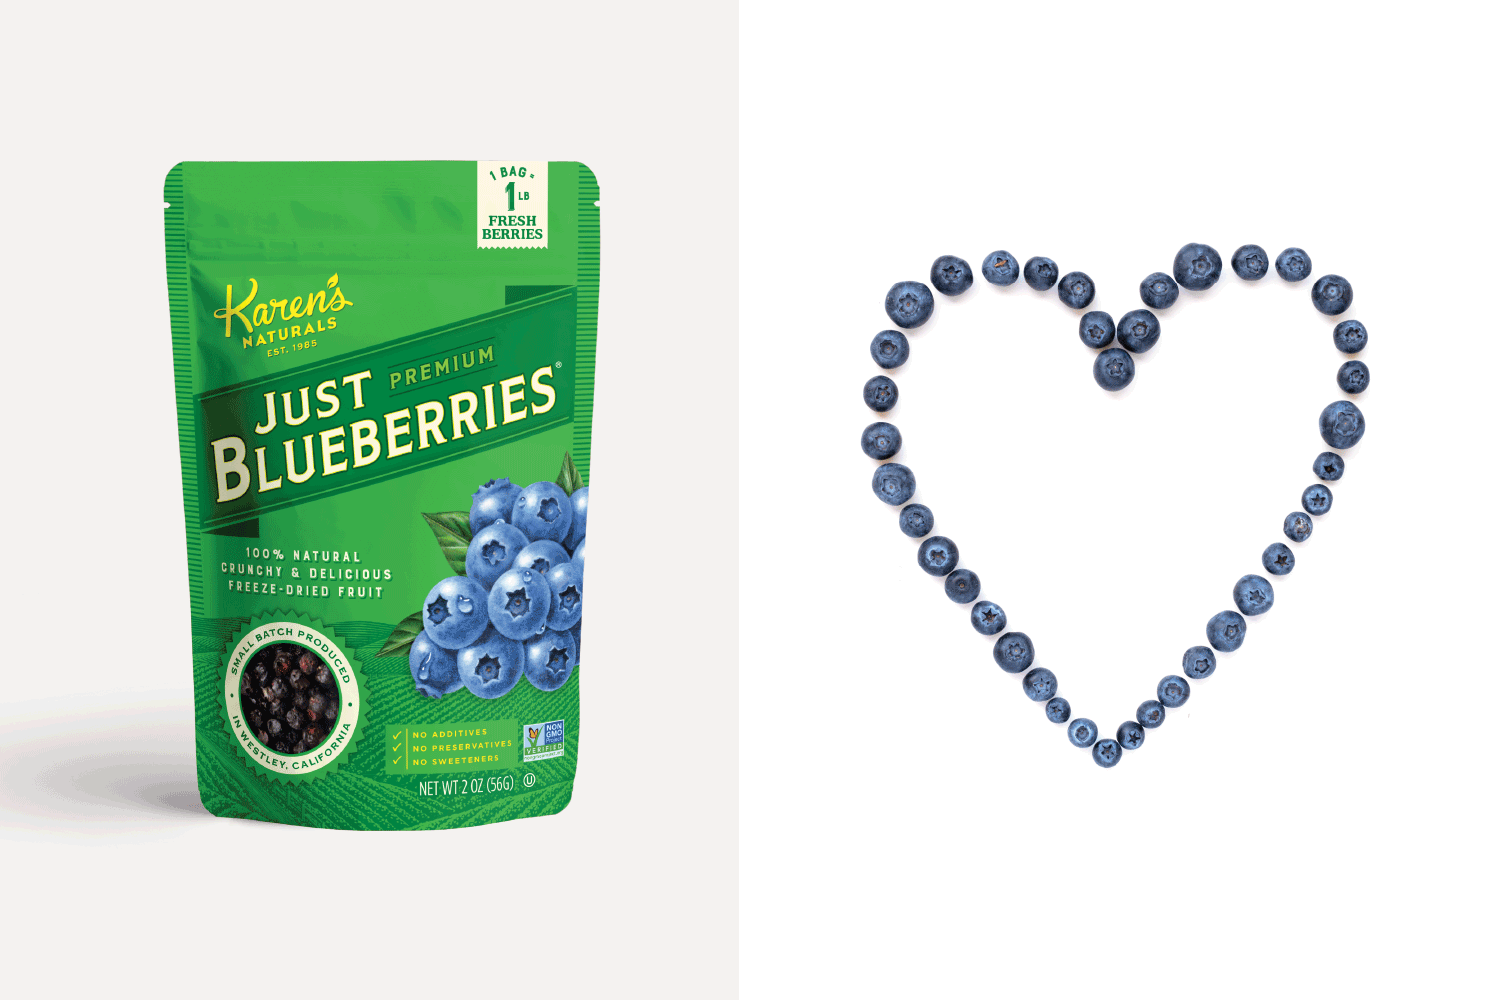 Karen's Naturals Just Blueberries